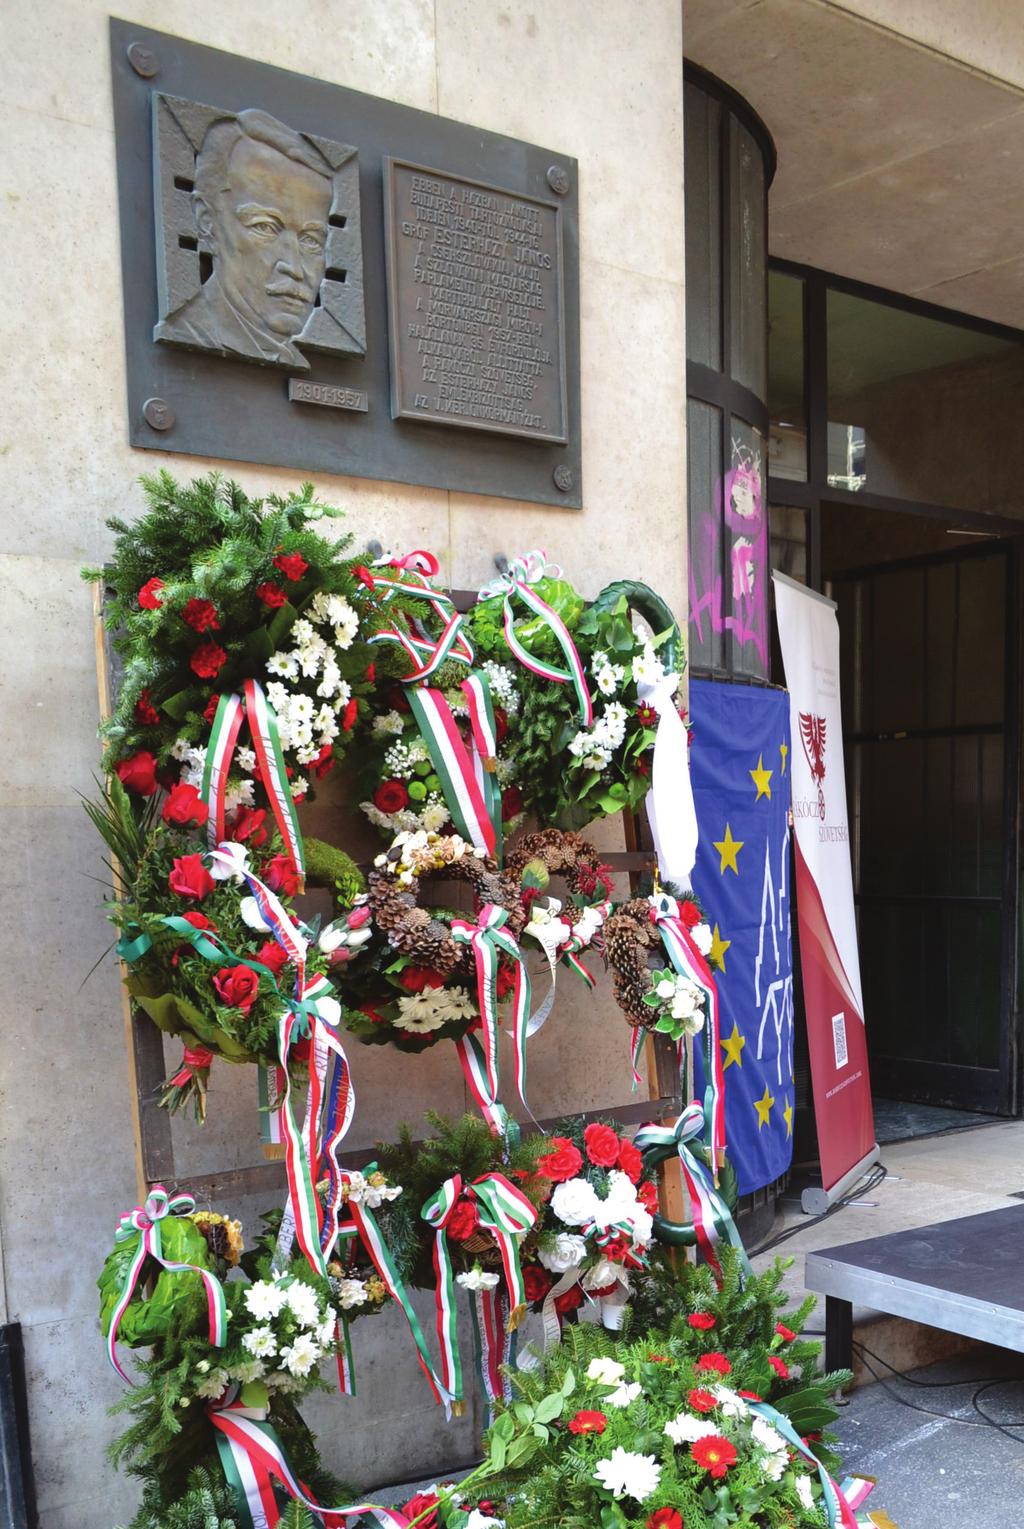 MEGEMLÉKEZÉSEK ját méltatta megemlékezve szerepvállalásáról, továbbá Megemlékezés a csehszlovák-magyar lakosságcsere-egyezmény 70. évfordulója alkalmából kiemelte a békés együttélés fontosságát is.